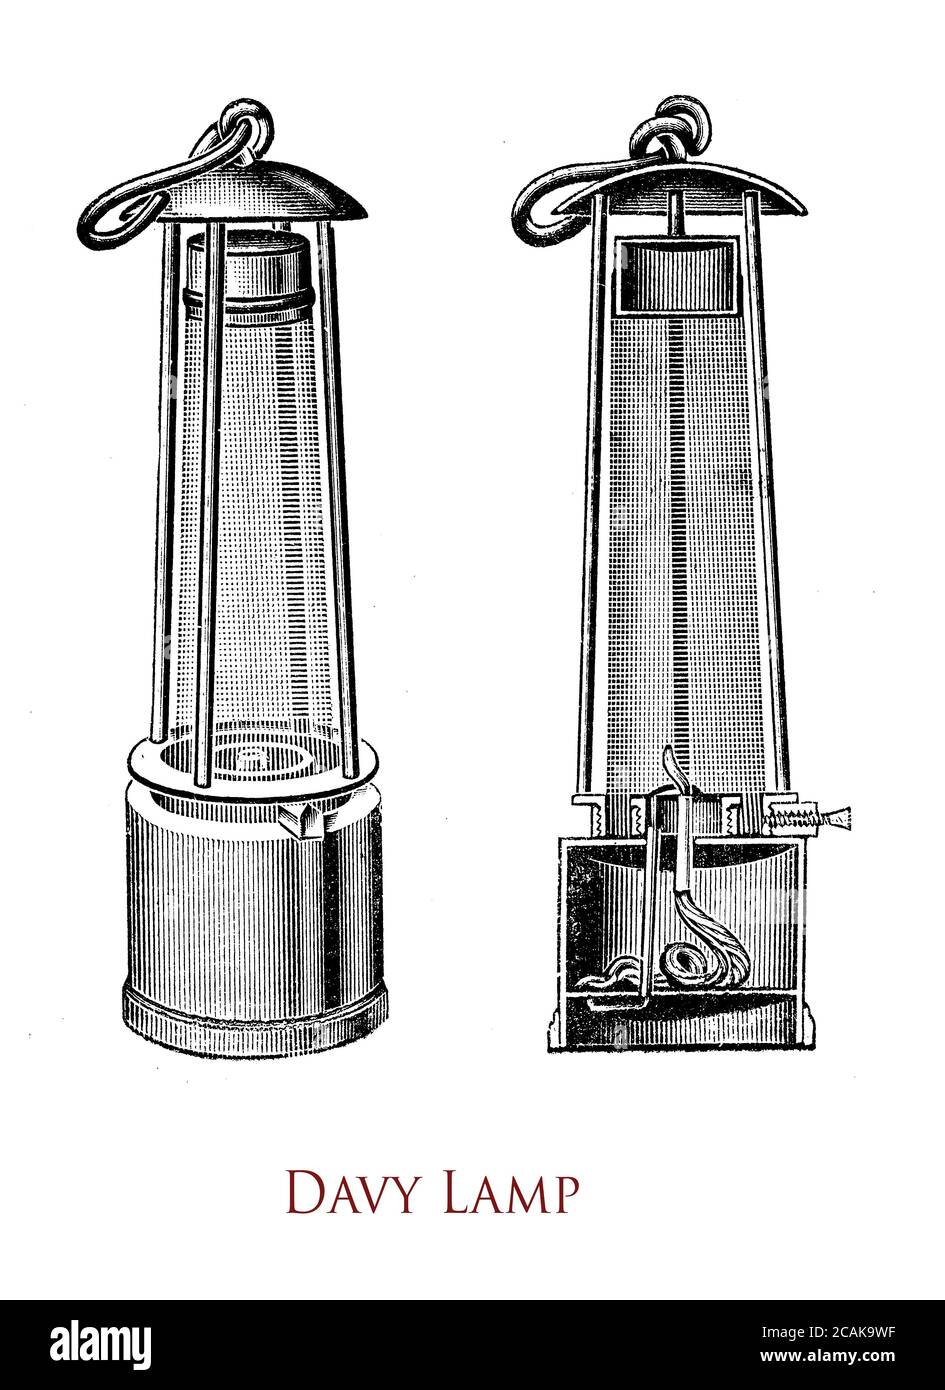 Davy LAMP ist eine Sicherheitslampe für den Einsatz in brennbaren Atmosphären wie Kohleminen, die 1815 von Sir Humphry Davy erfunden wurde. Es besteht aus einer Dochtlampe mit der Flamme, die durch Pflanzenöl produziert wird, eingeschlossen in einem Gitterschirm. Stockfoto